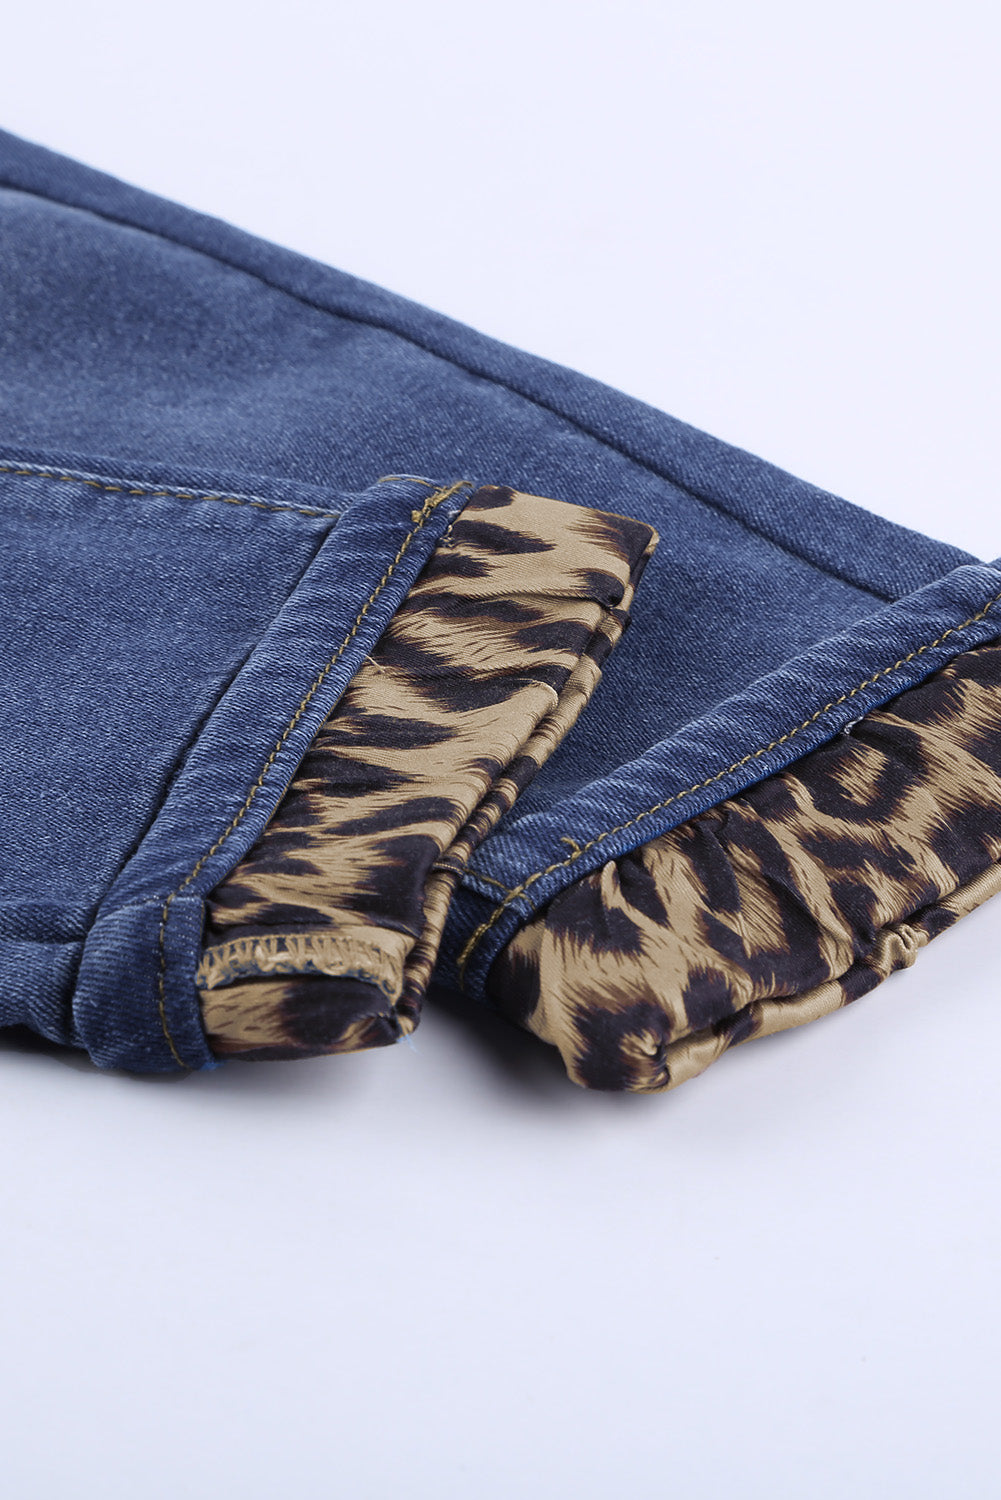 Leopard Patchwork Distressed Jeans Pants